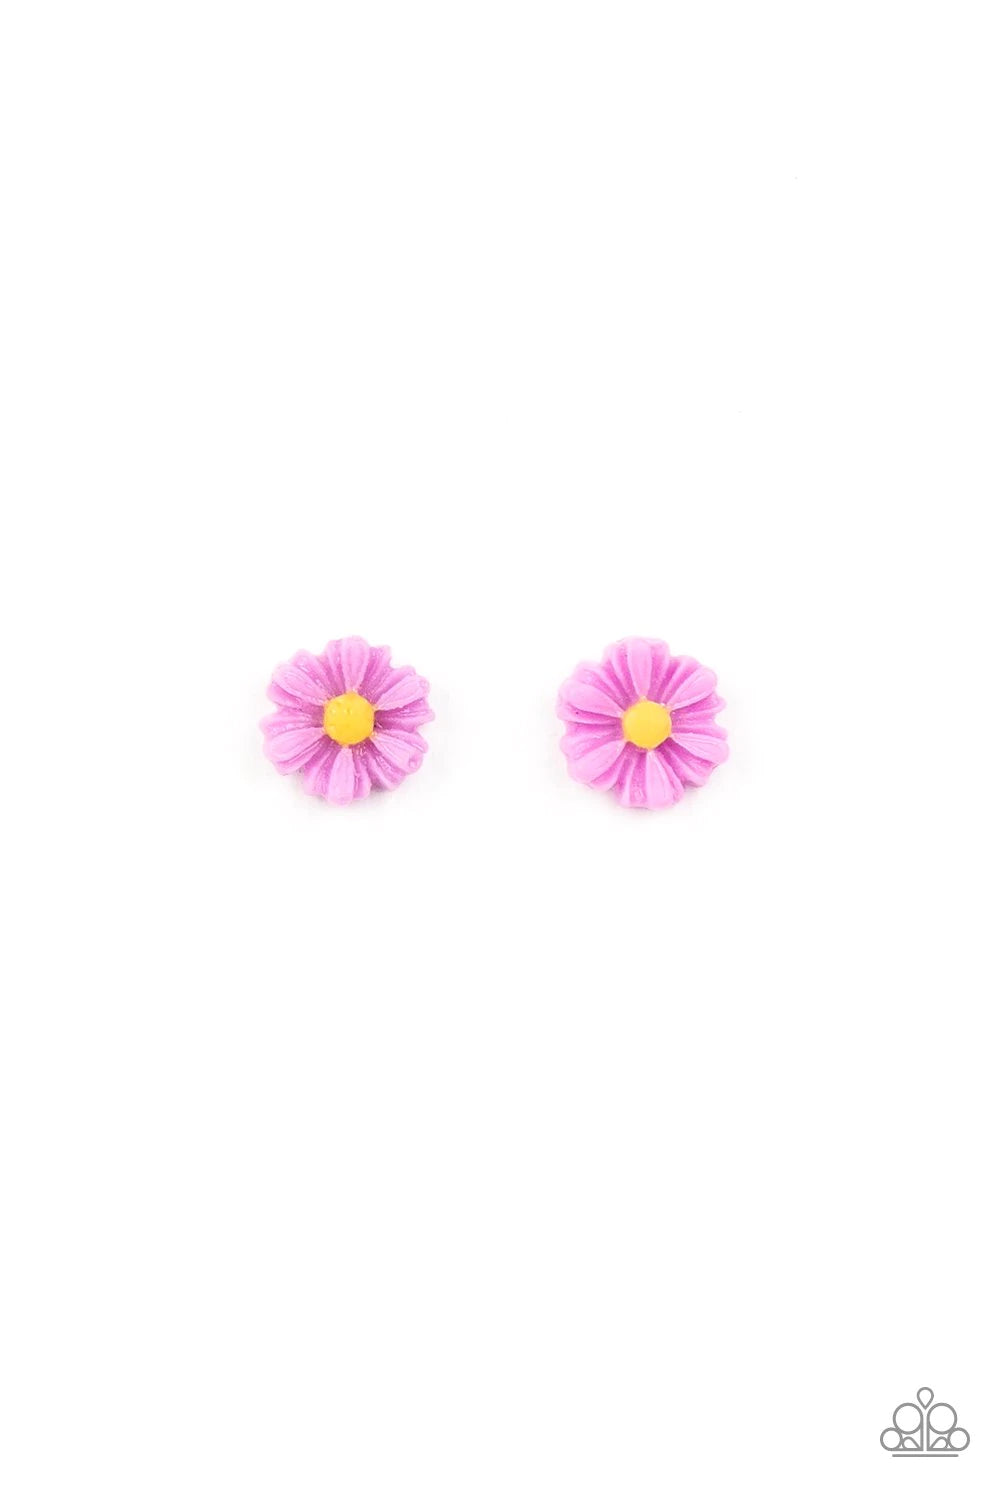 Starlet Shimmer Mini-Daisy Earrings ♥ Single Pair ♥